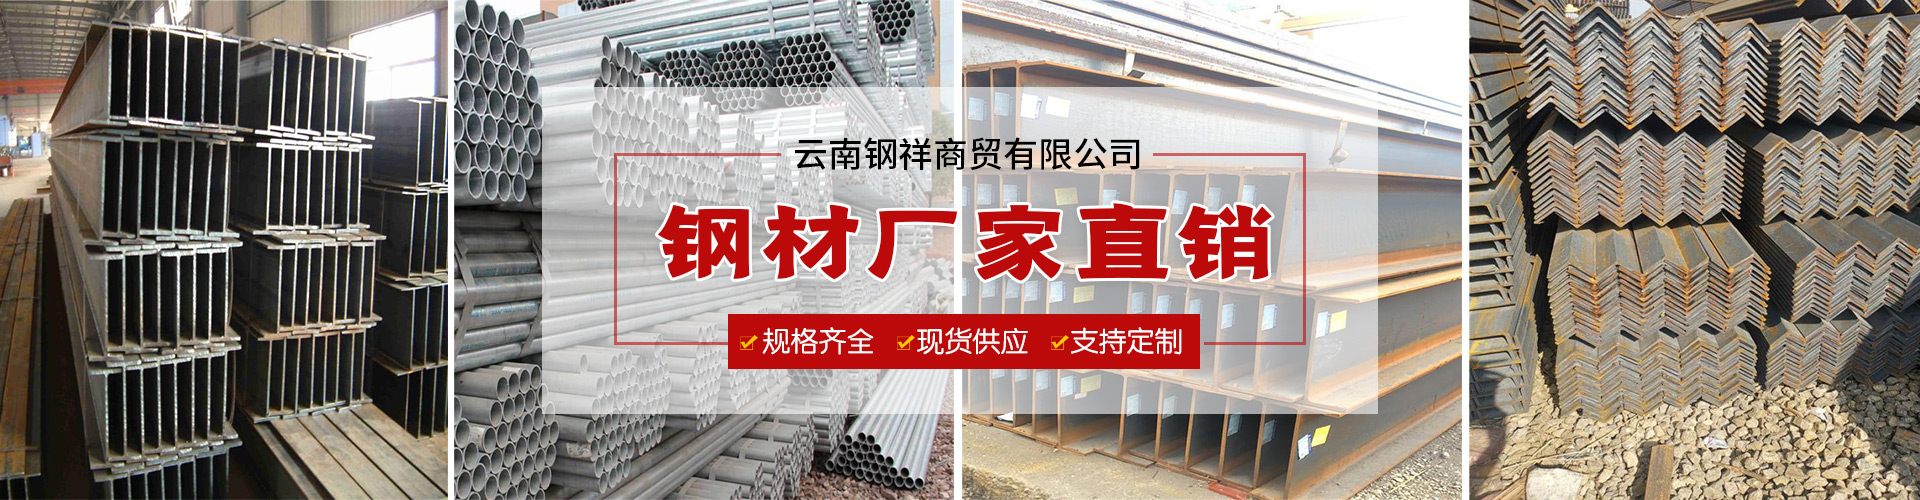 云南钢模板二手钢模板新旧钢模板 钢模板厂家销售